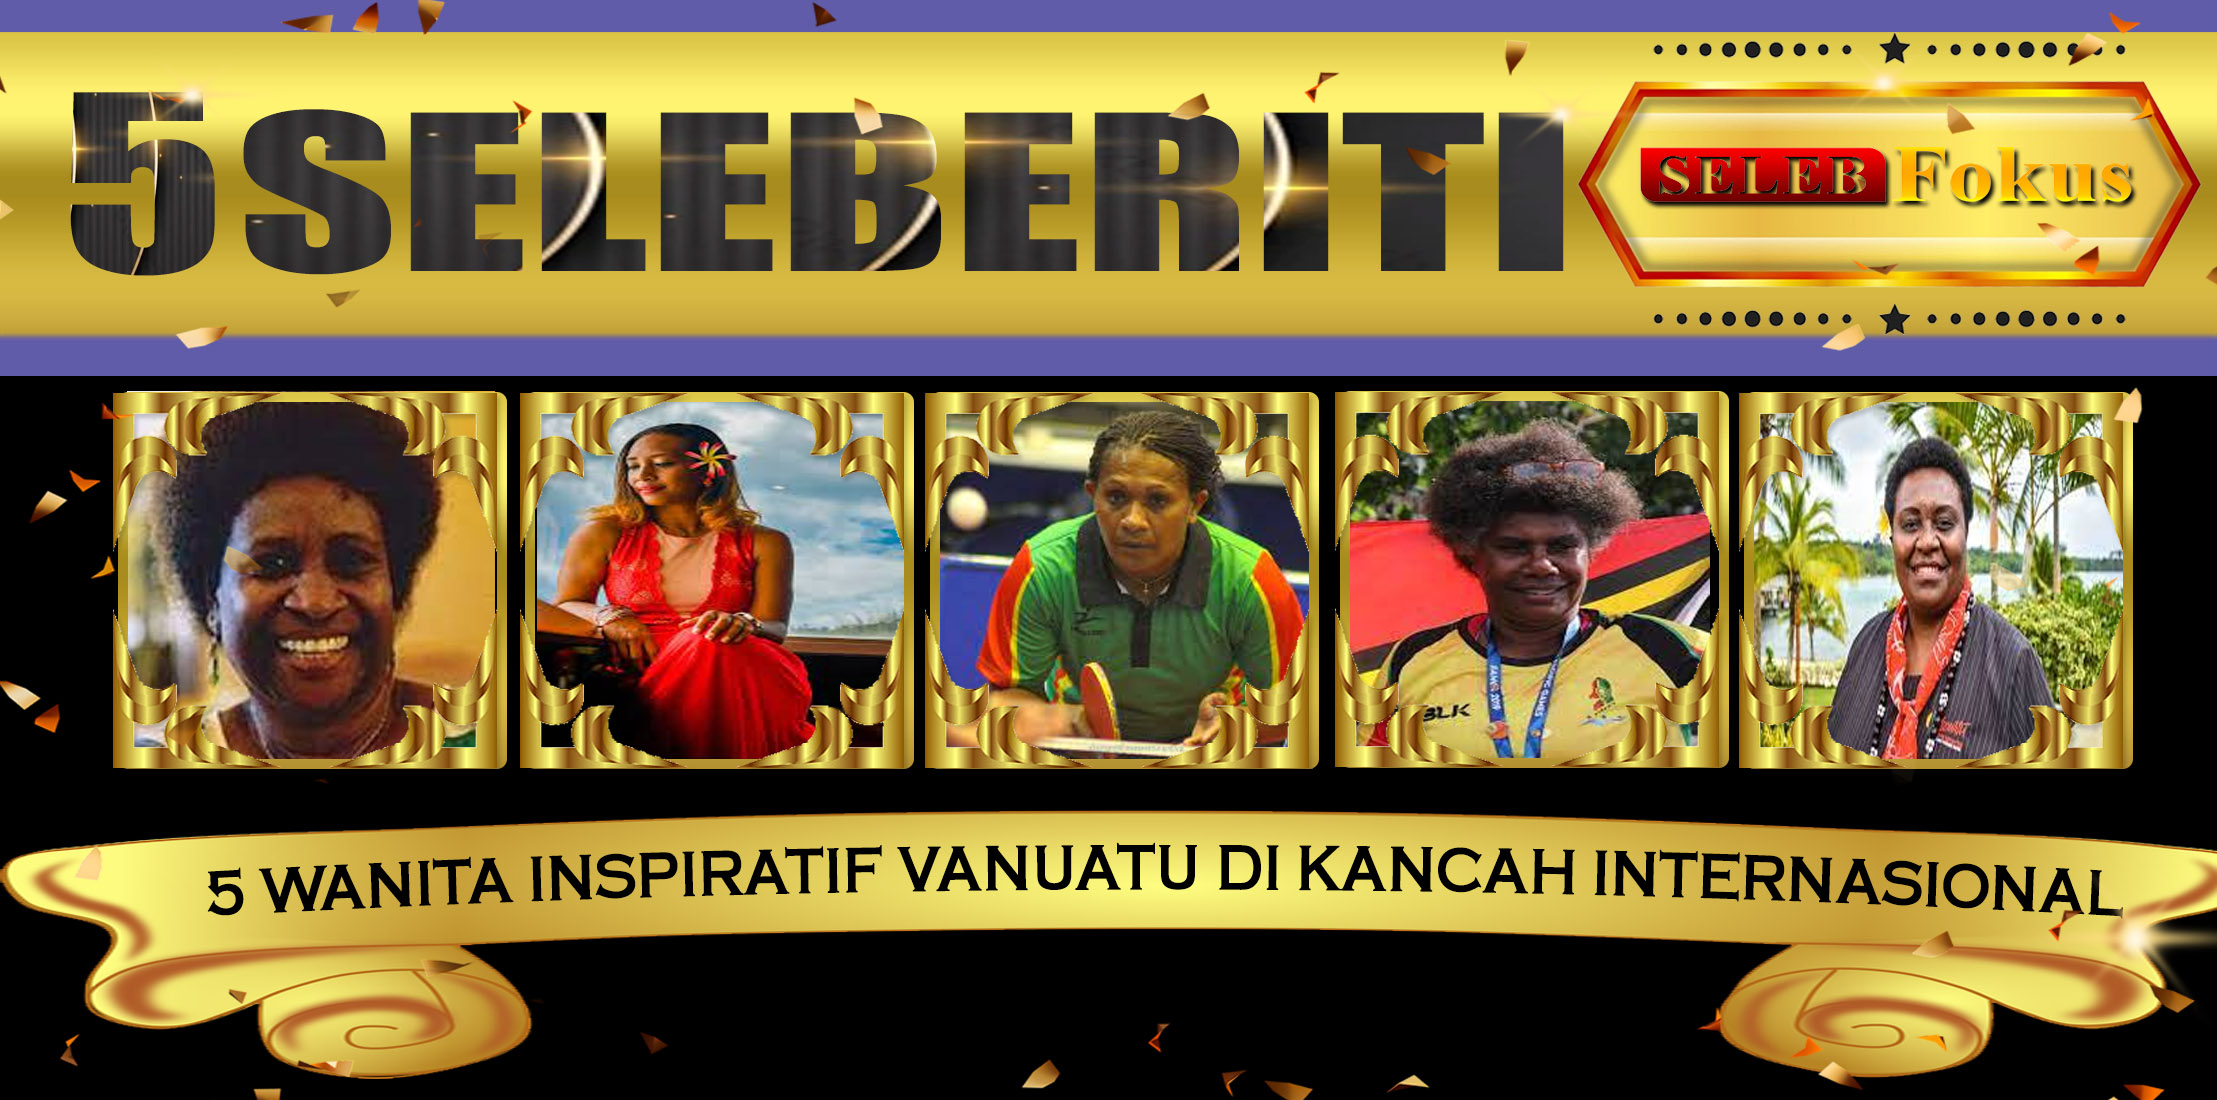 5 Wanita Inspiratif Vanuatu